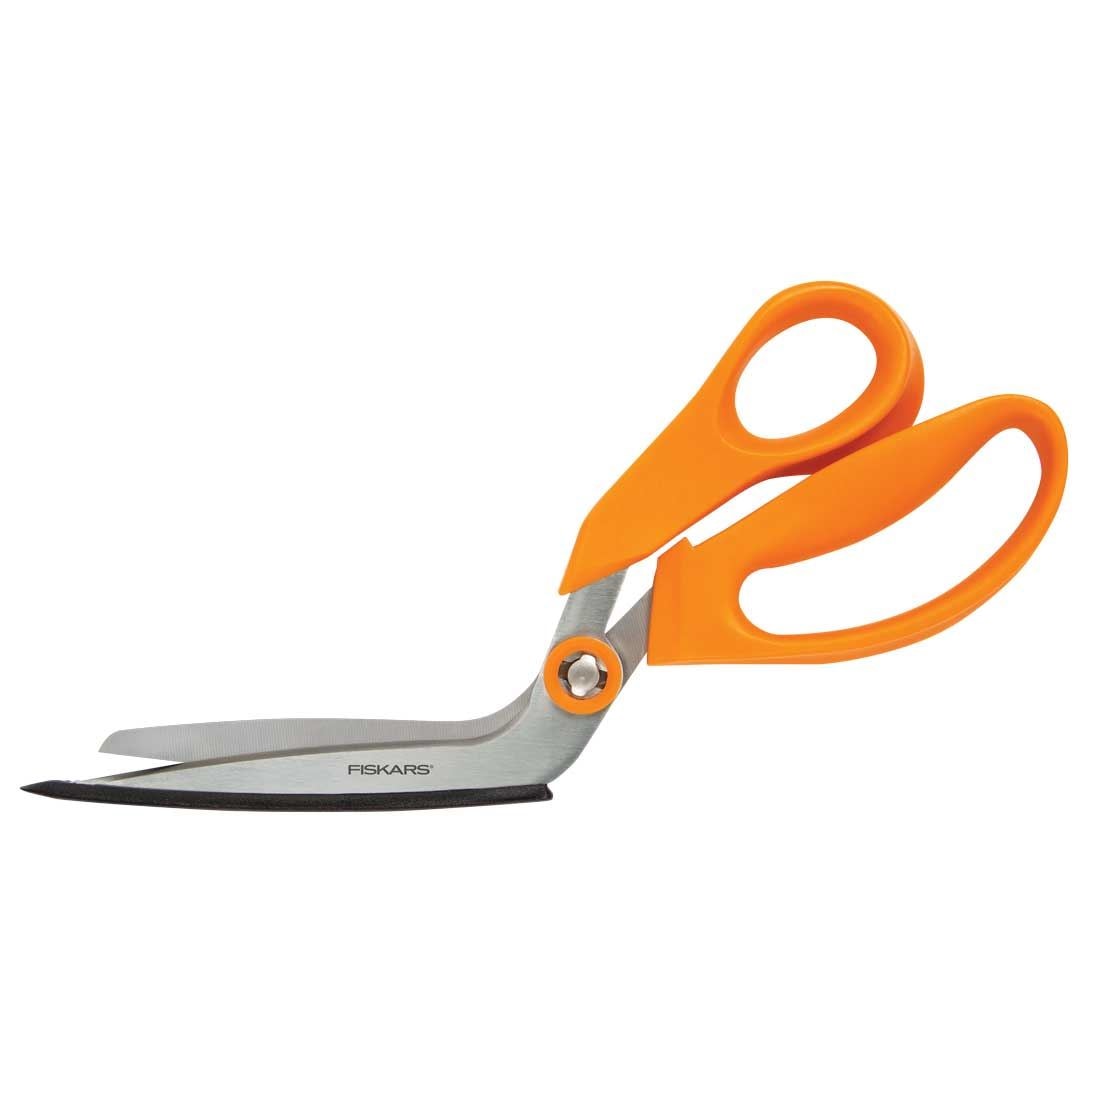  Fiskars 1005137 Scissors Sharpener, 3.5 x 10.2 x 9.8